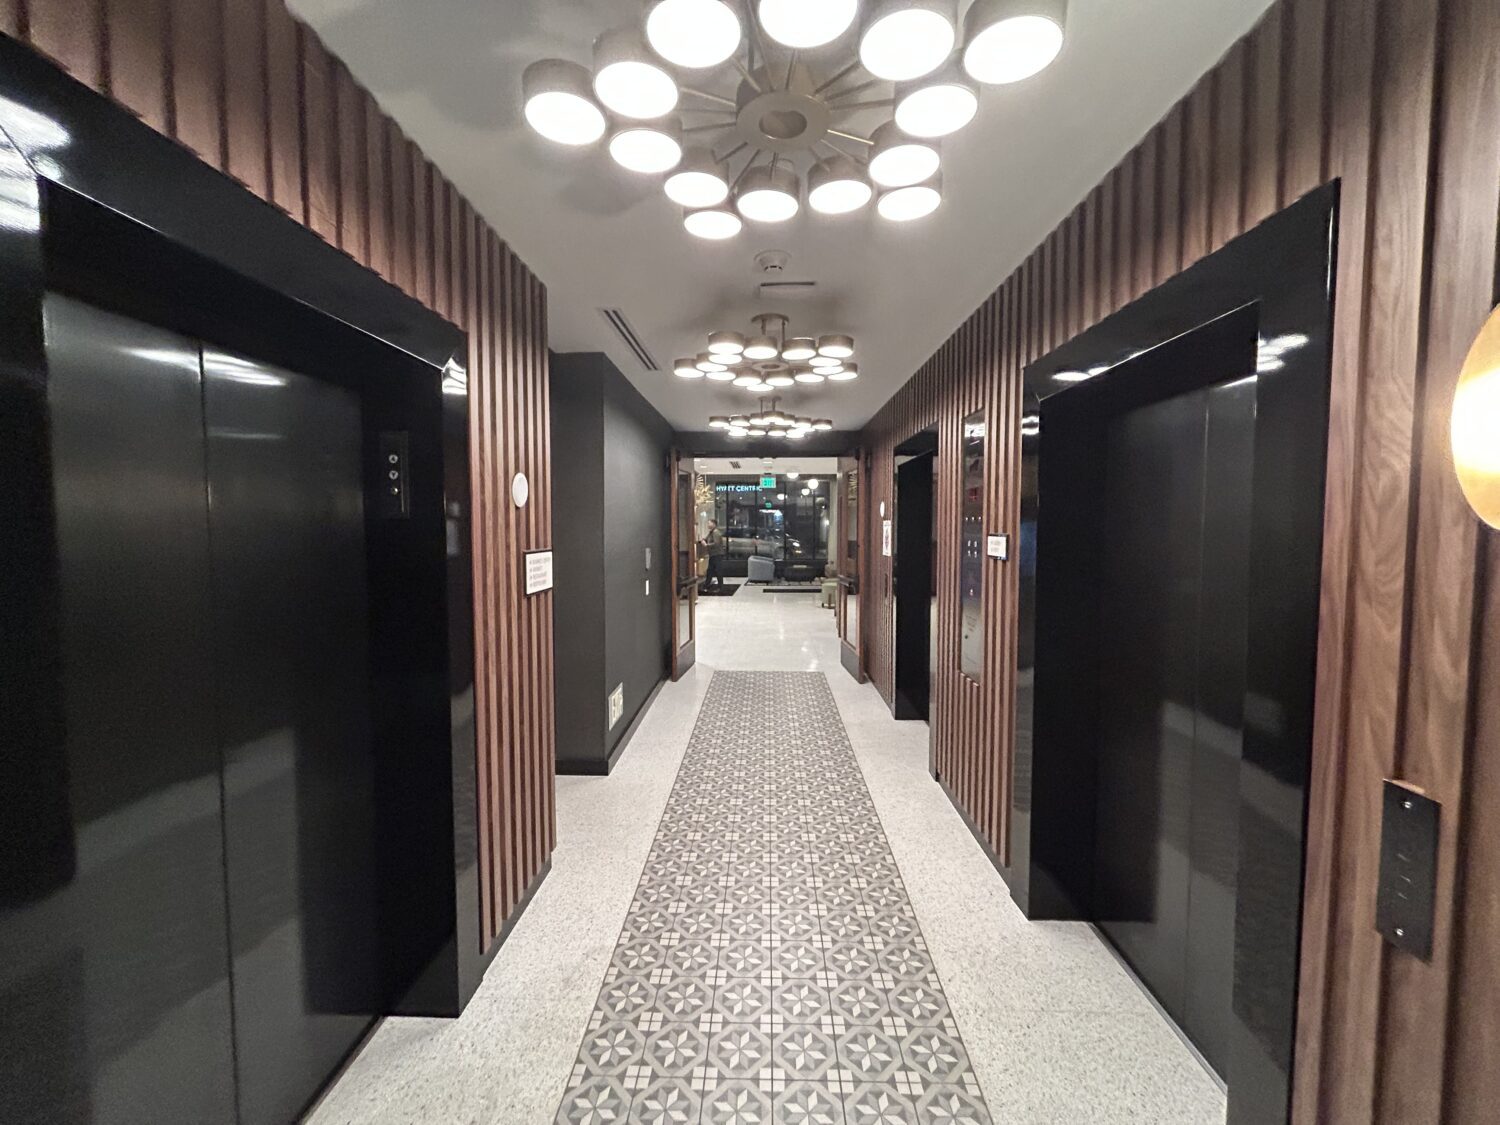 Hotel Indigo elevator lobby